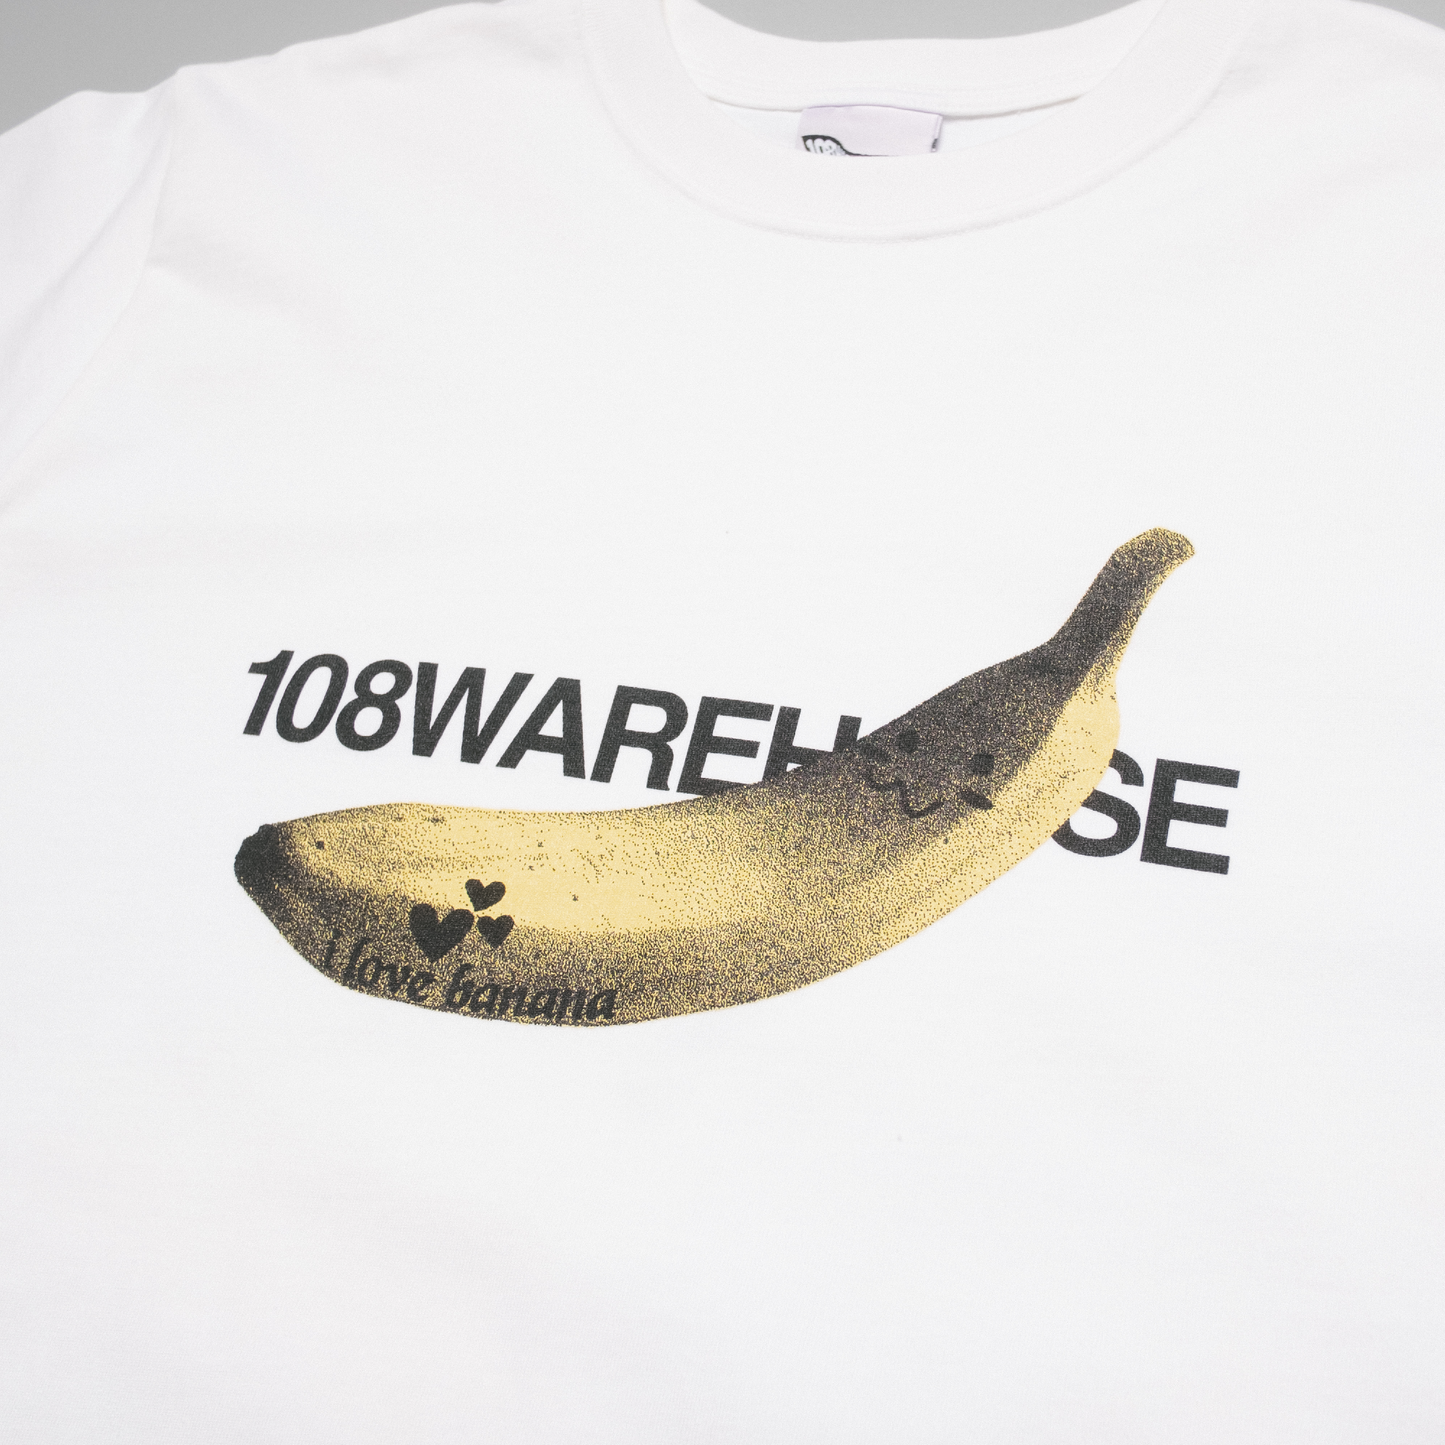 108Warehouse - I Love Fruit (White)